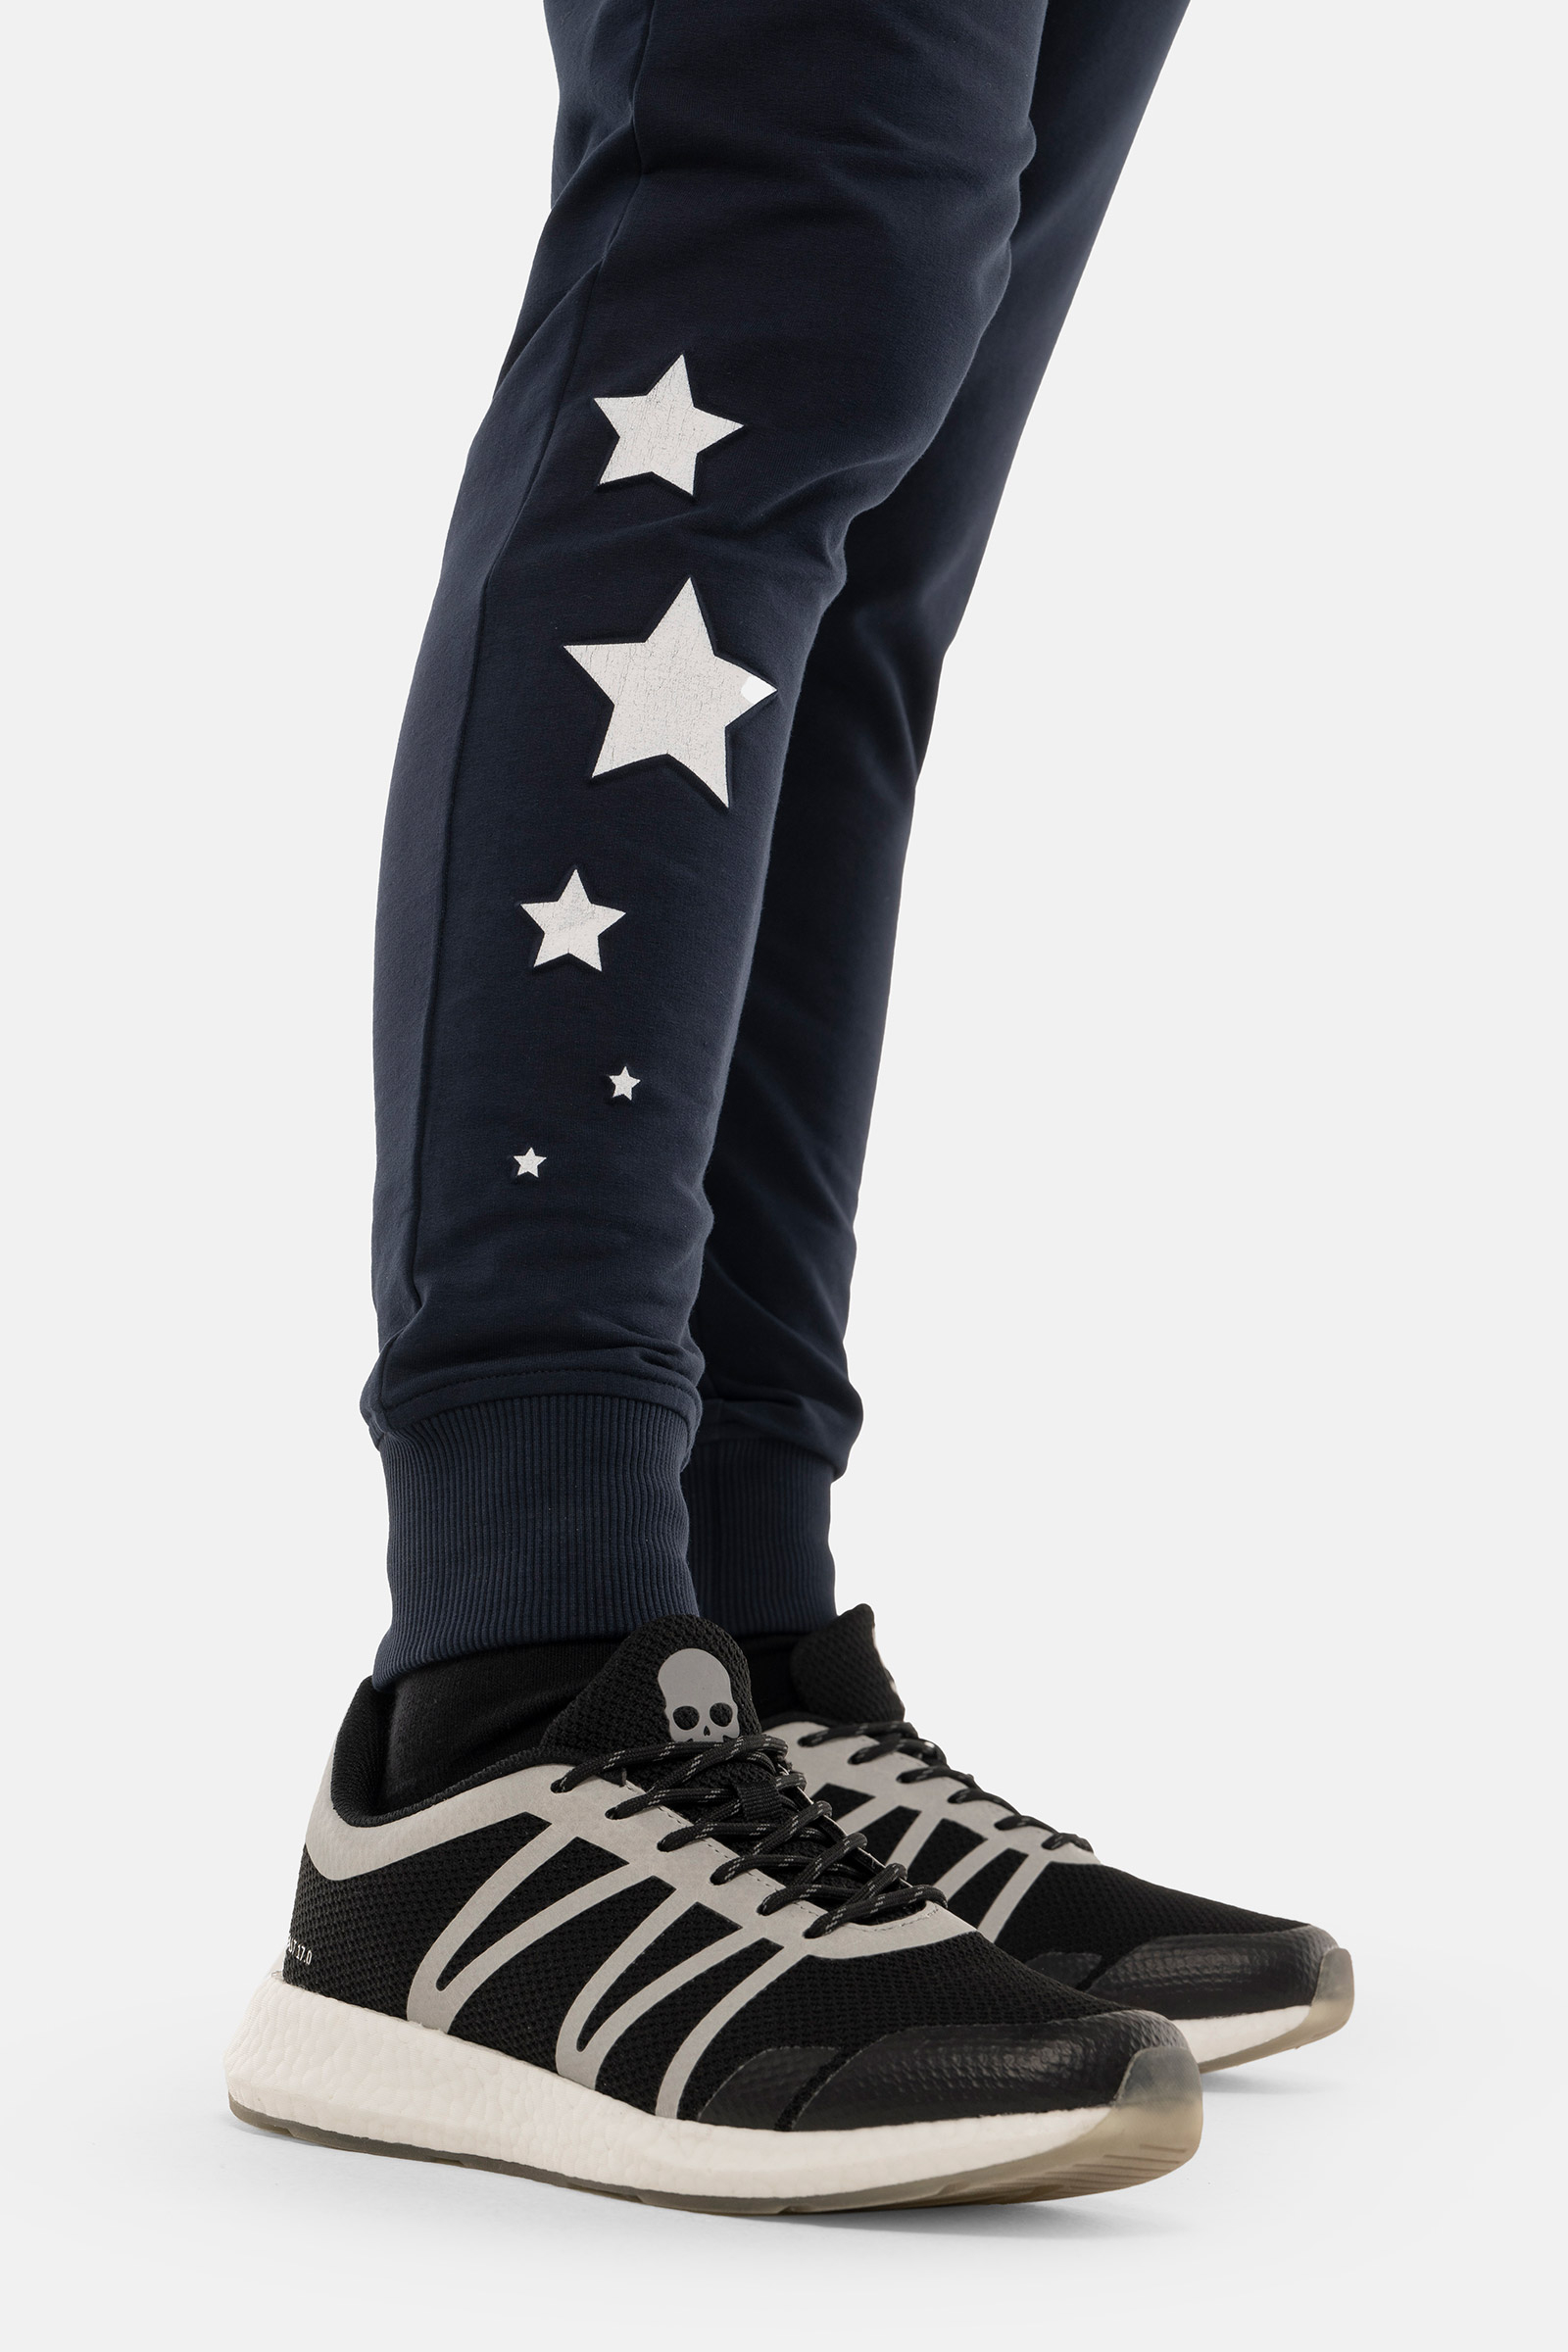 STARS PANTS - BLUE - Hydrogen - Luxury Sportwear